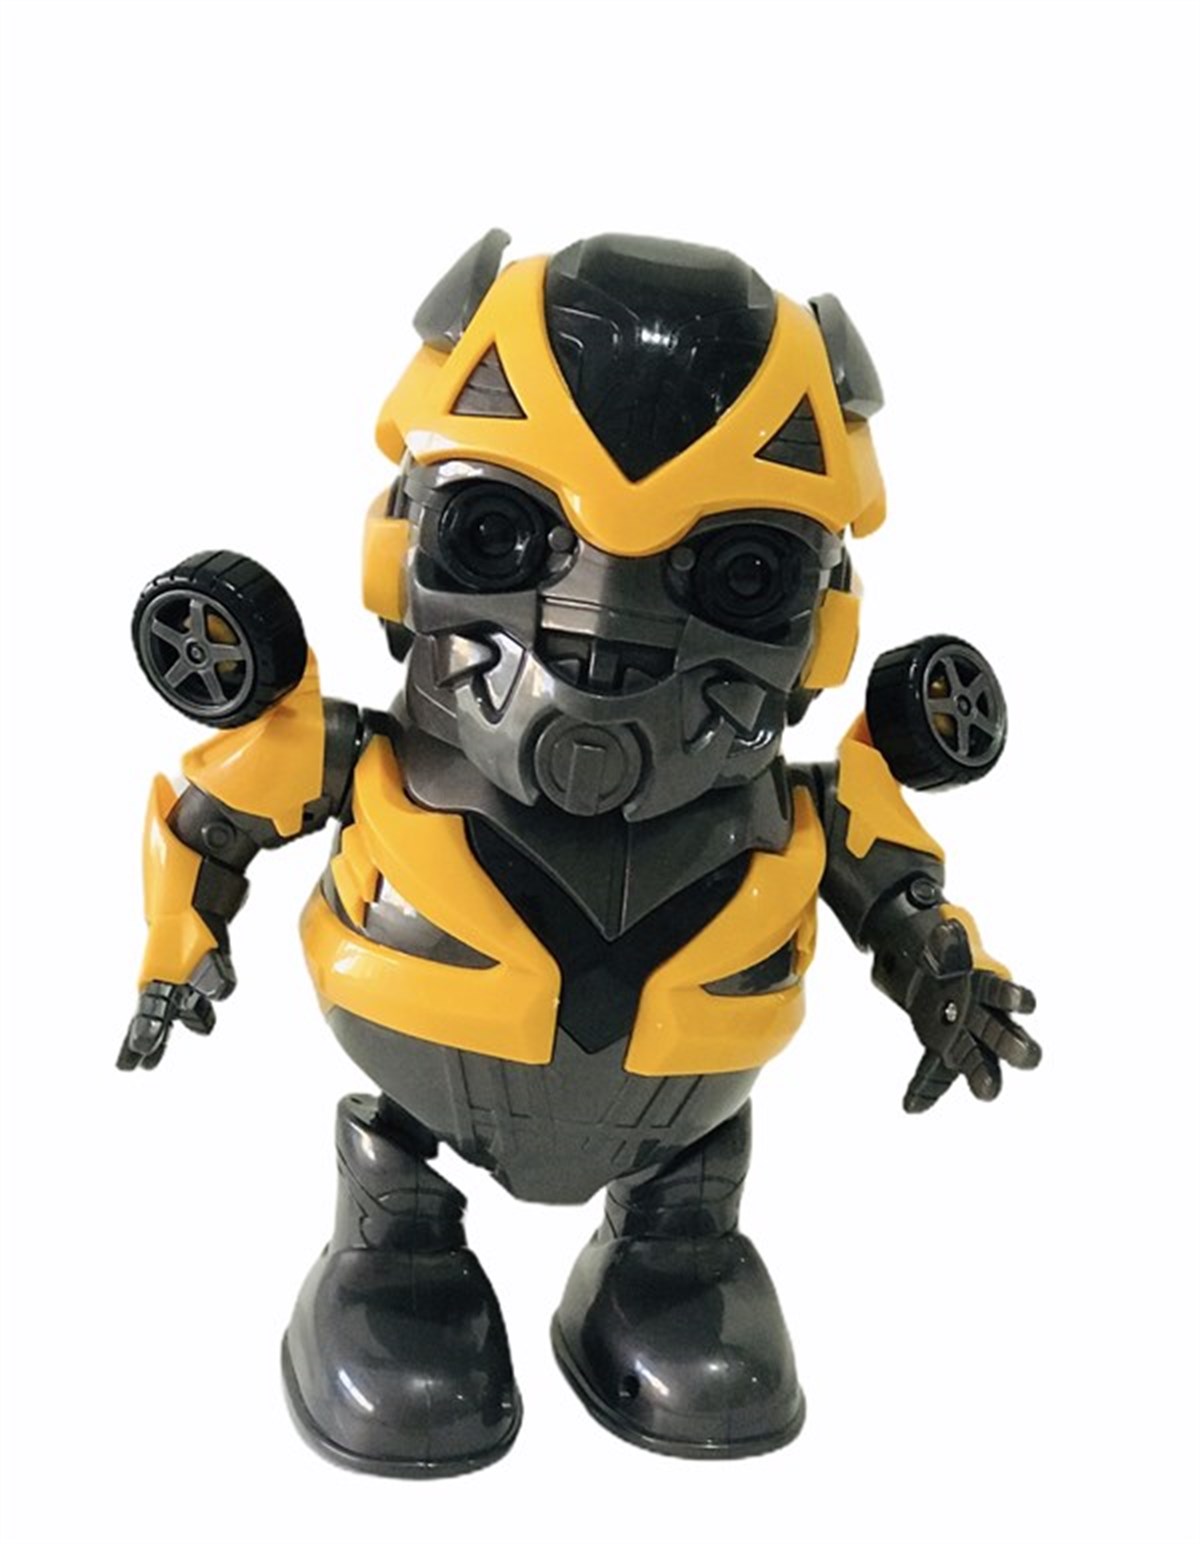 Bumblebee Robot Dansçı Hero - Dans Eden Bumblebee Robot Oyuncak - Kaptan  Oyuncak